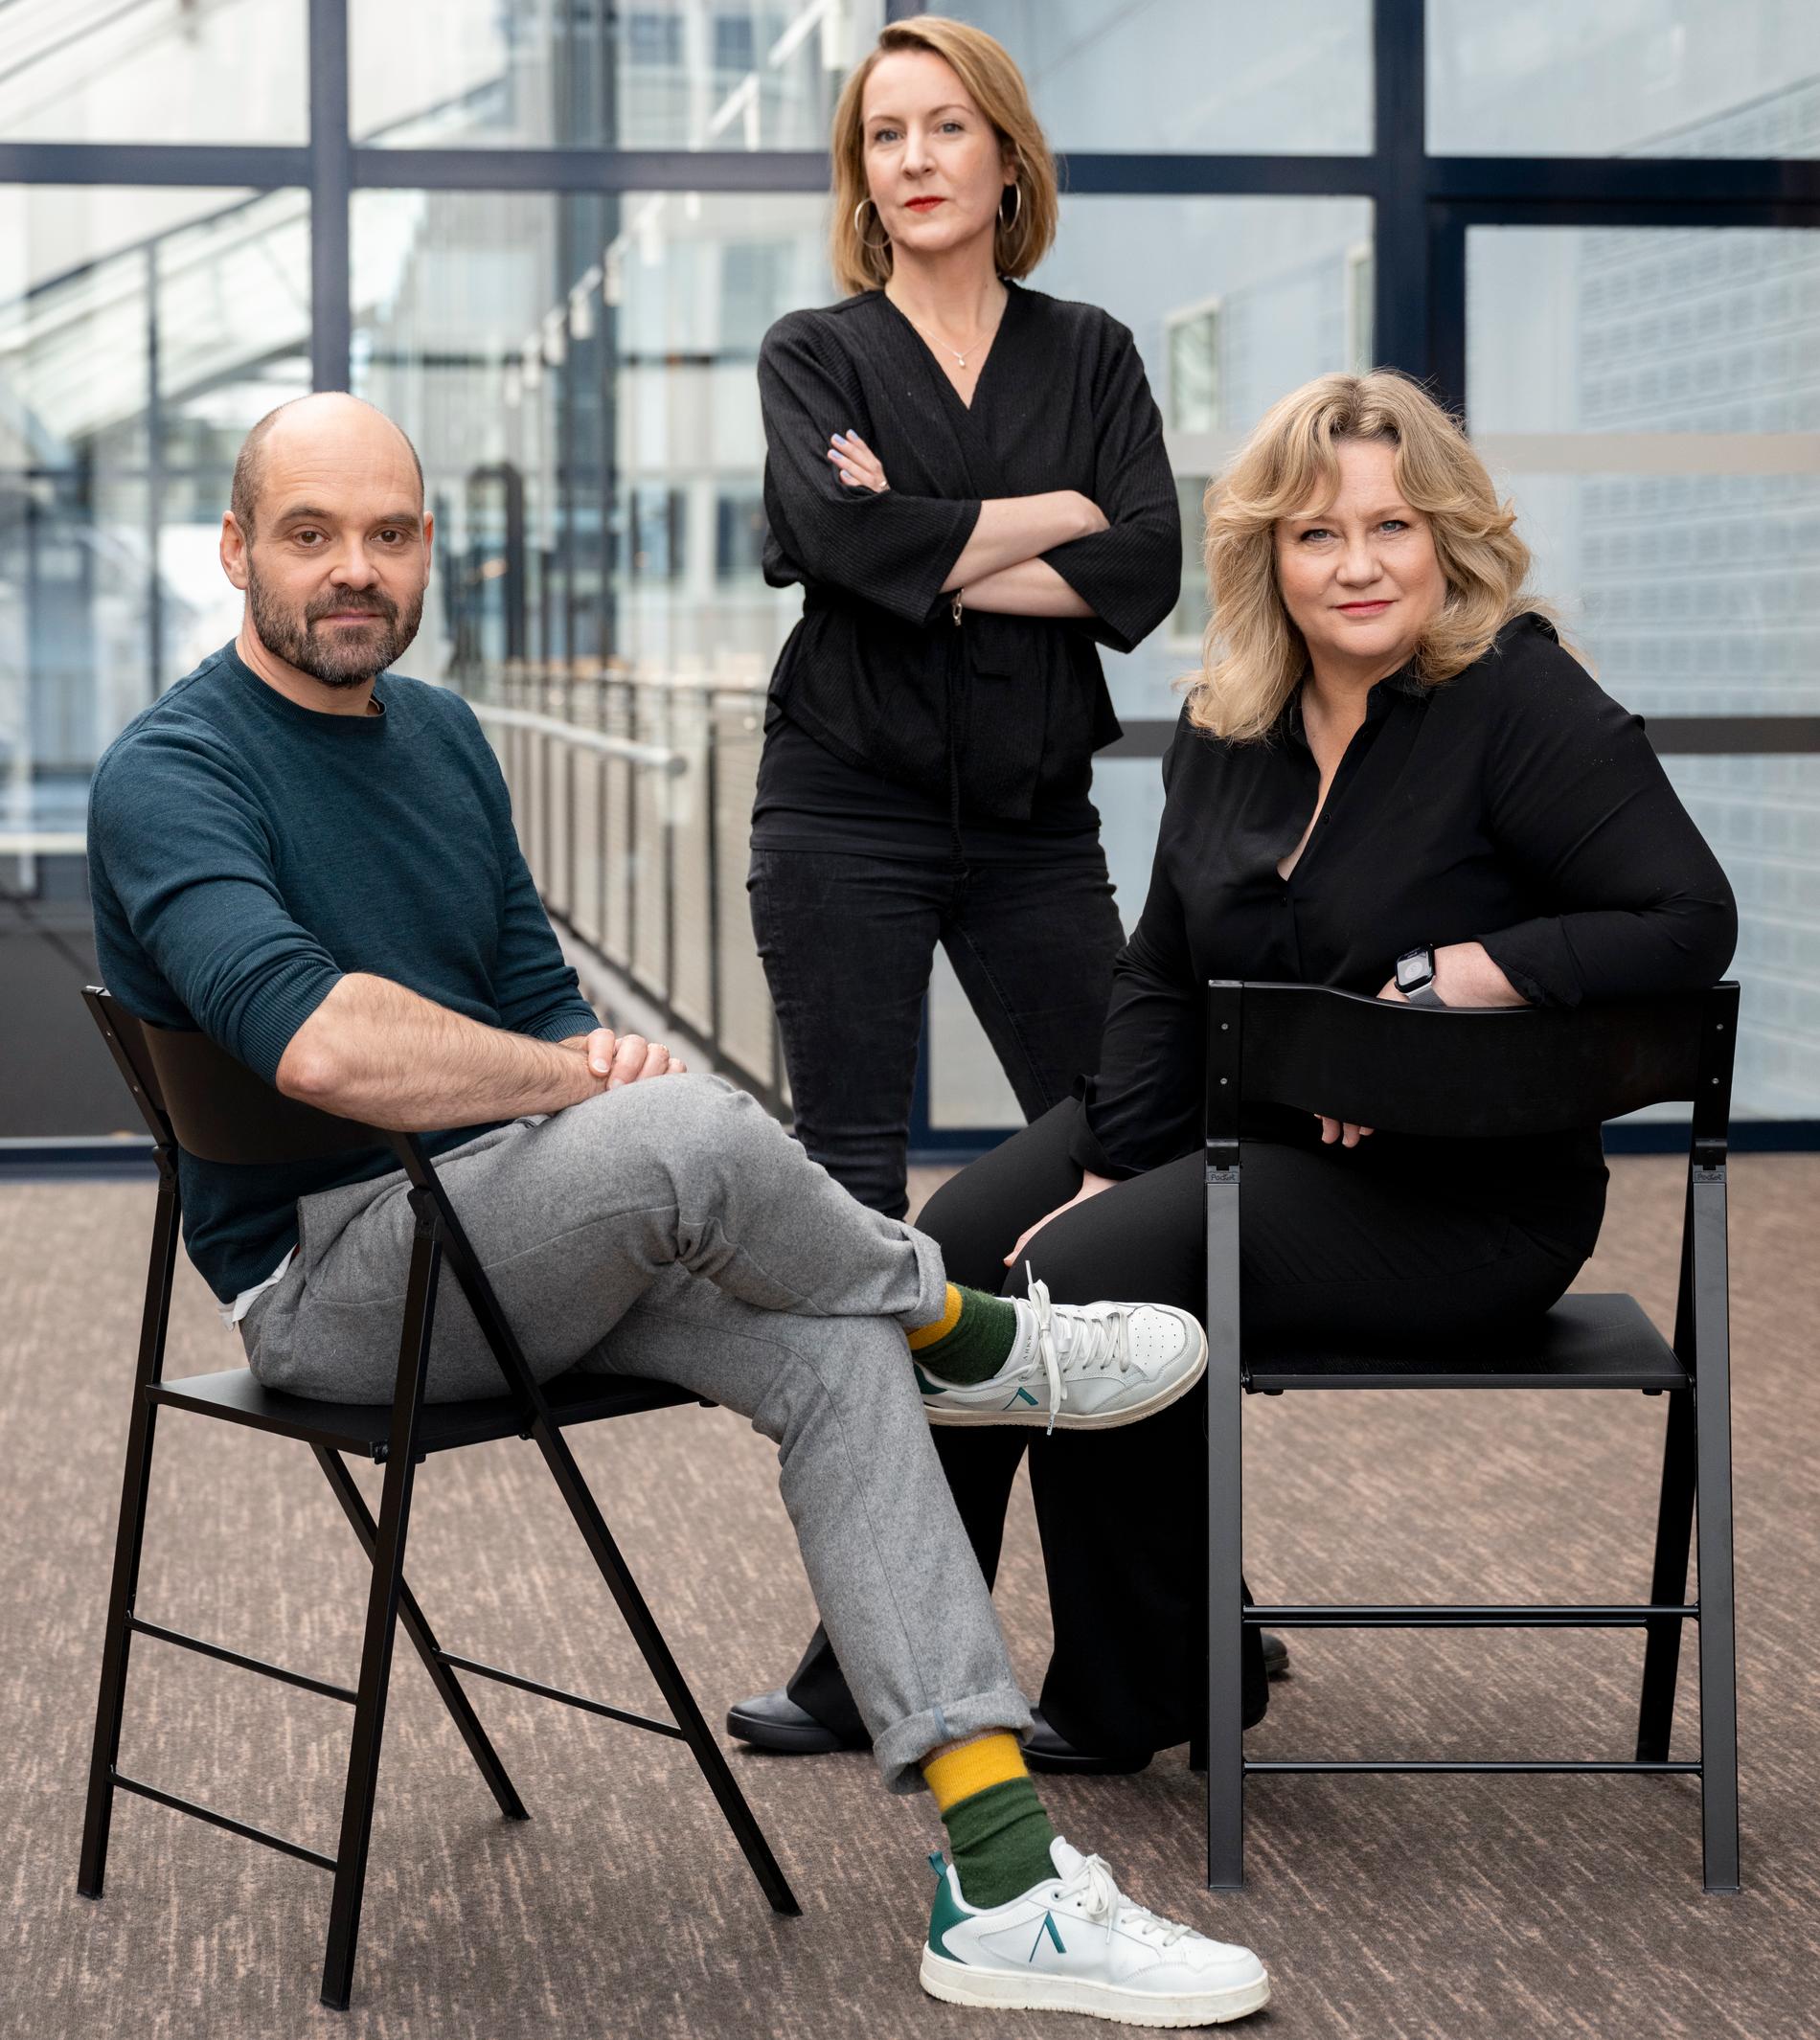 Regissören Sanna Lenken omgiven av skådespelarna David Dencik och Maria Sid. SVT:s nya drama "Smärtpunkten" om Lars Noréns ödesdigra teaterprojekt "7:3", har premiär den 19 april.